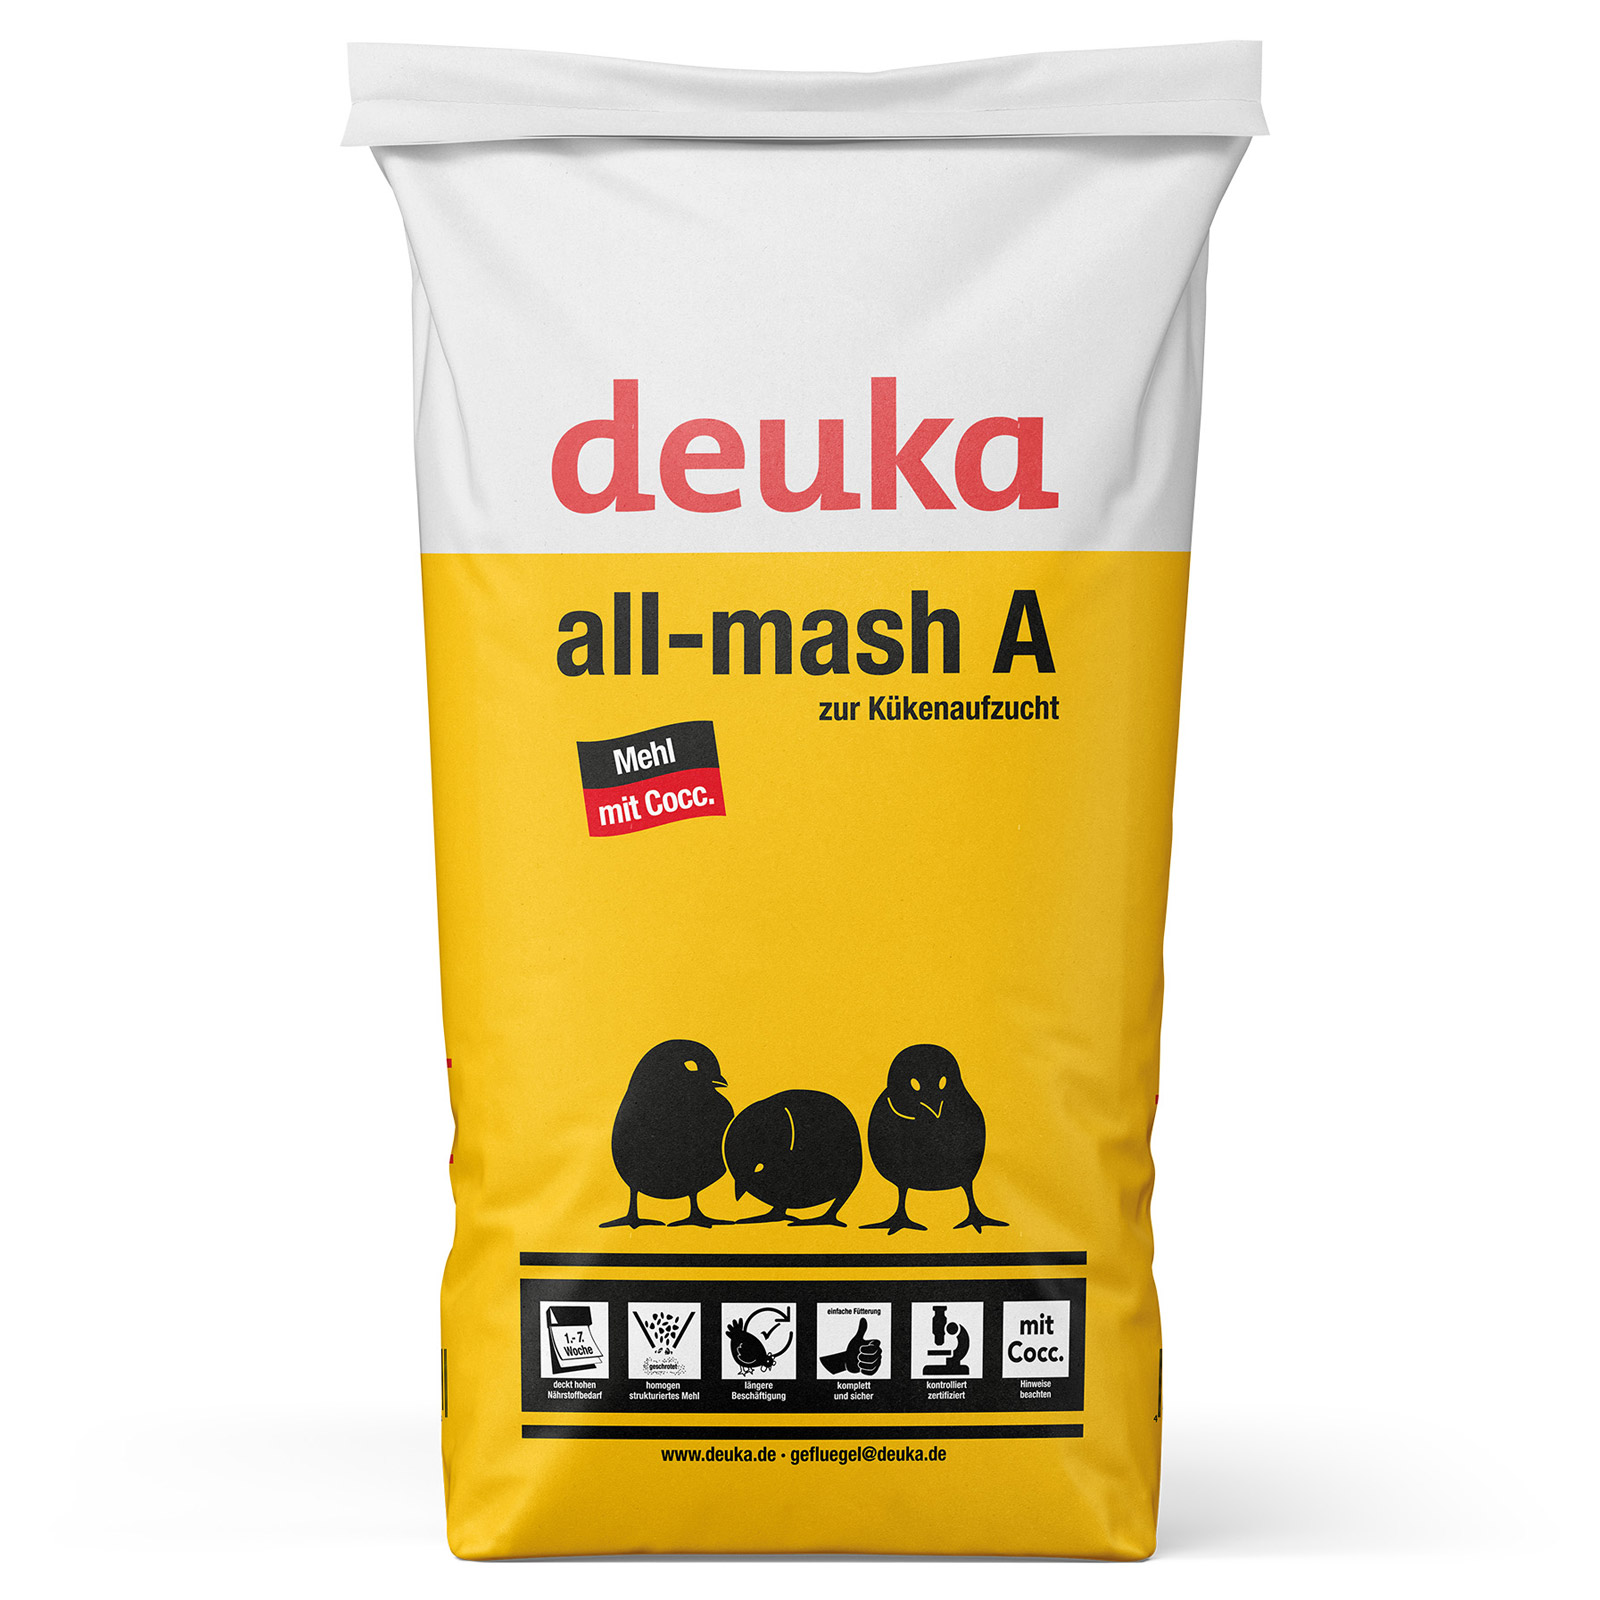 Deuka All-Mash A Mehl mit COCC Kükenfutter 25 kg